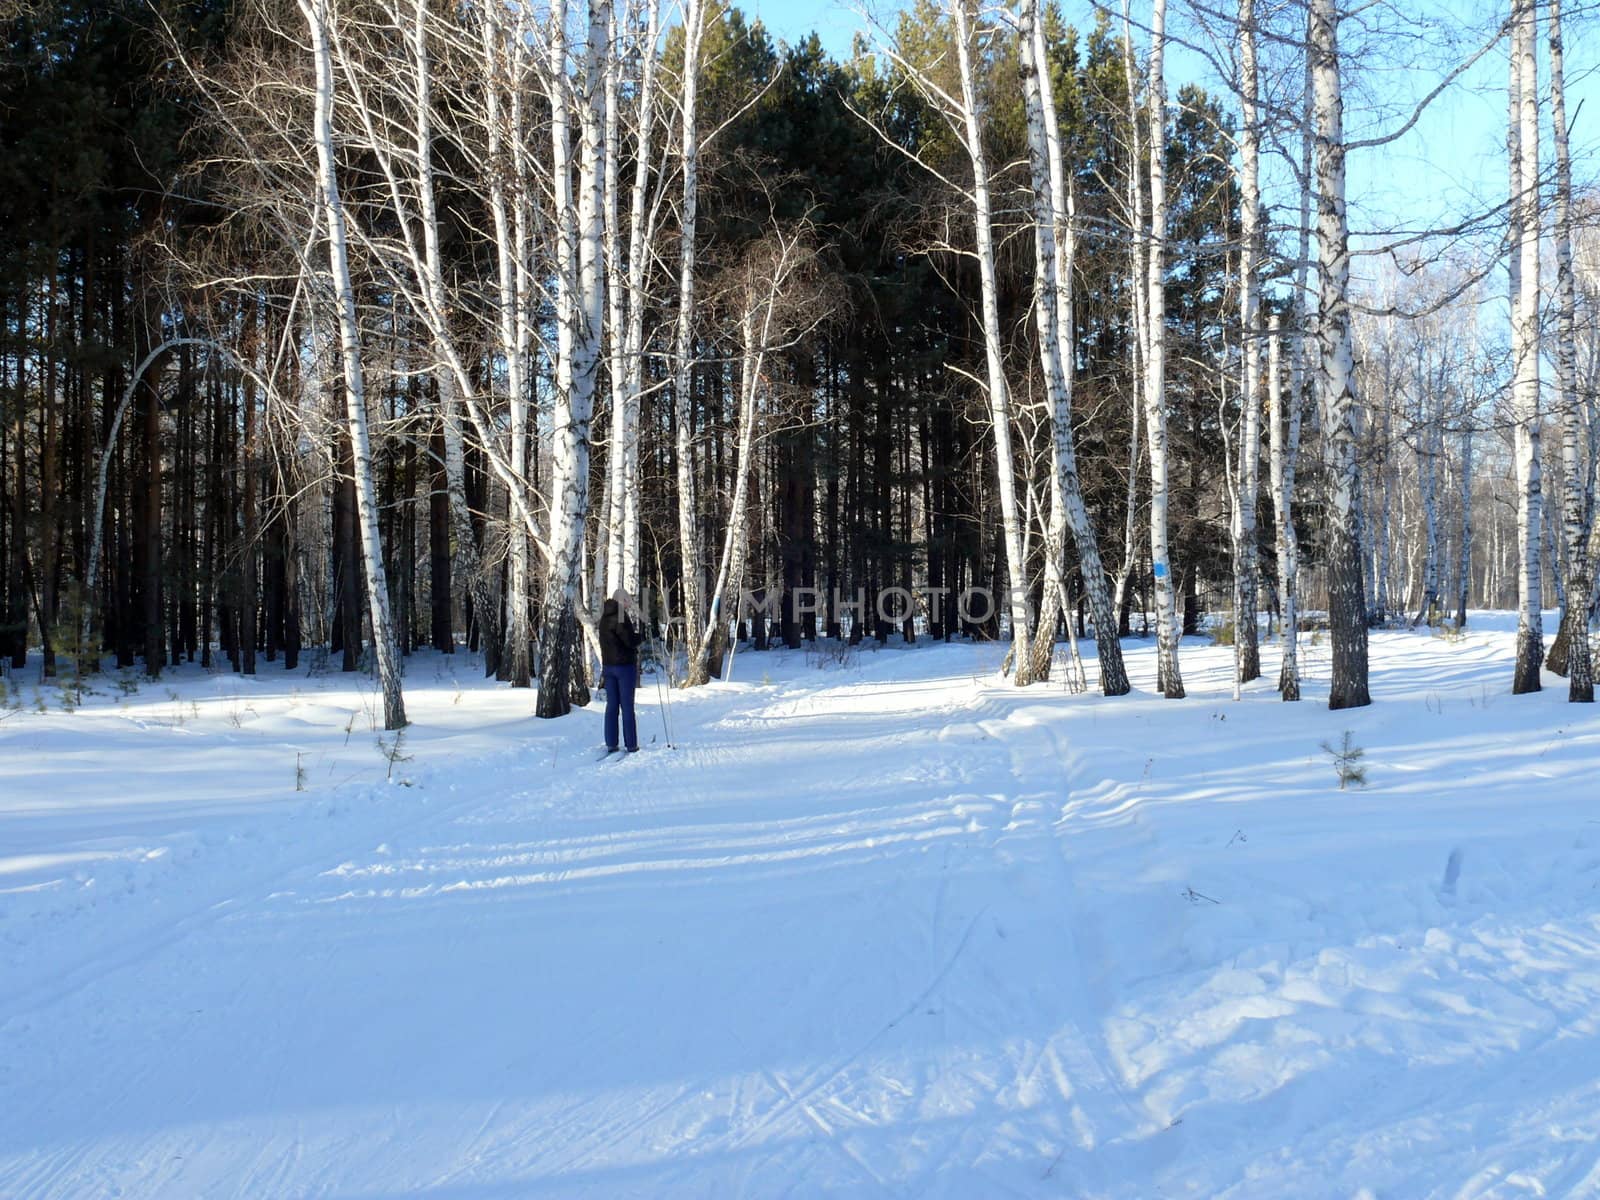 Winter landscape by Stoyanov